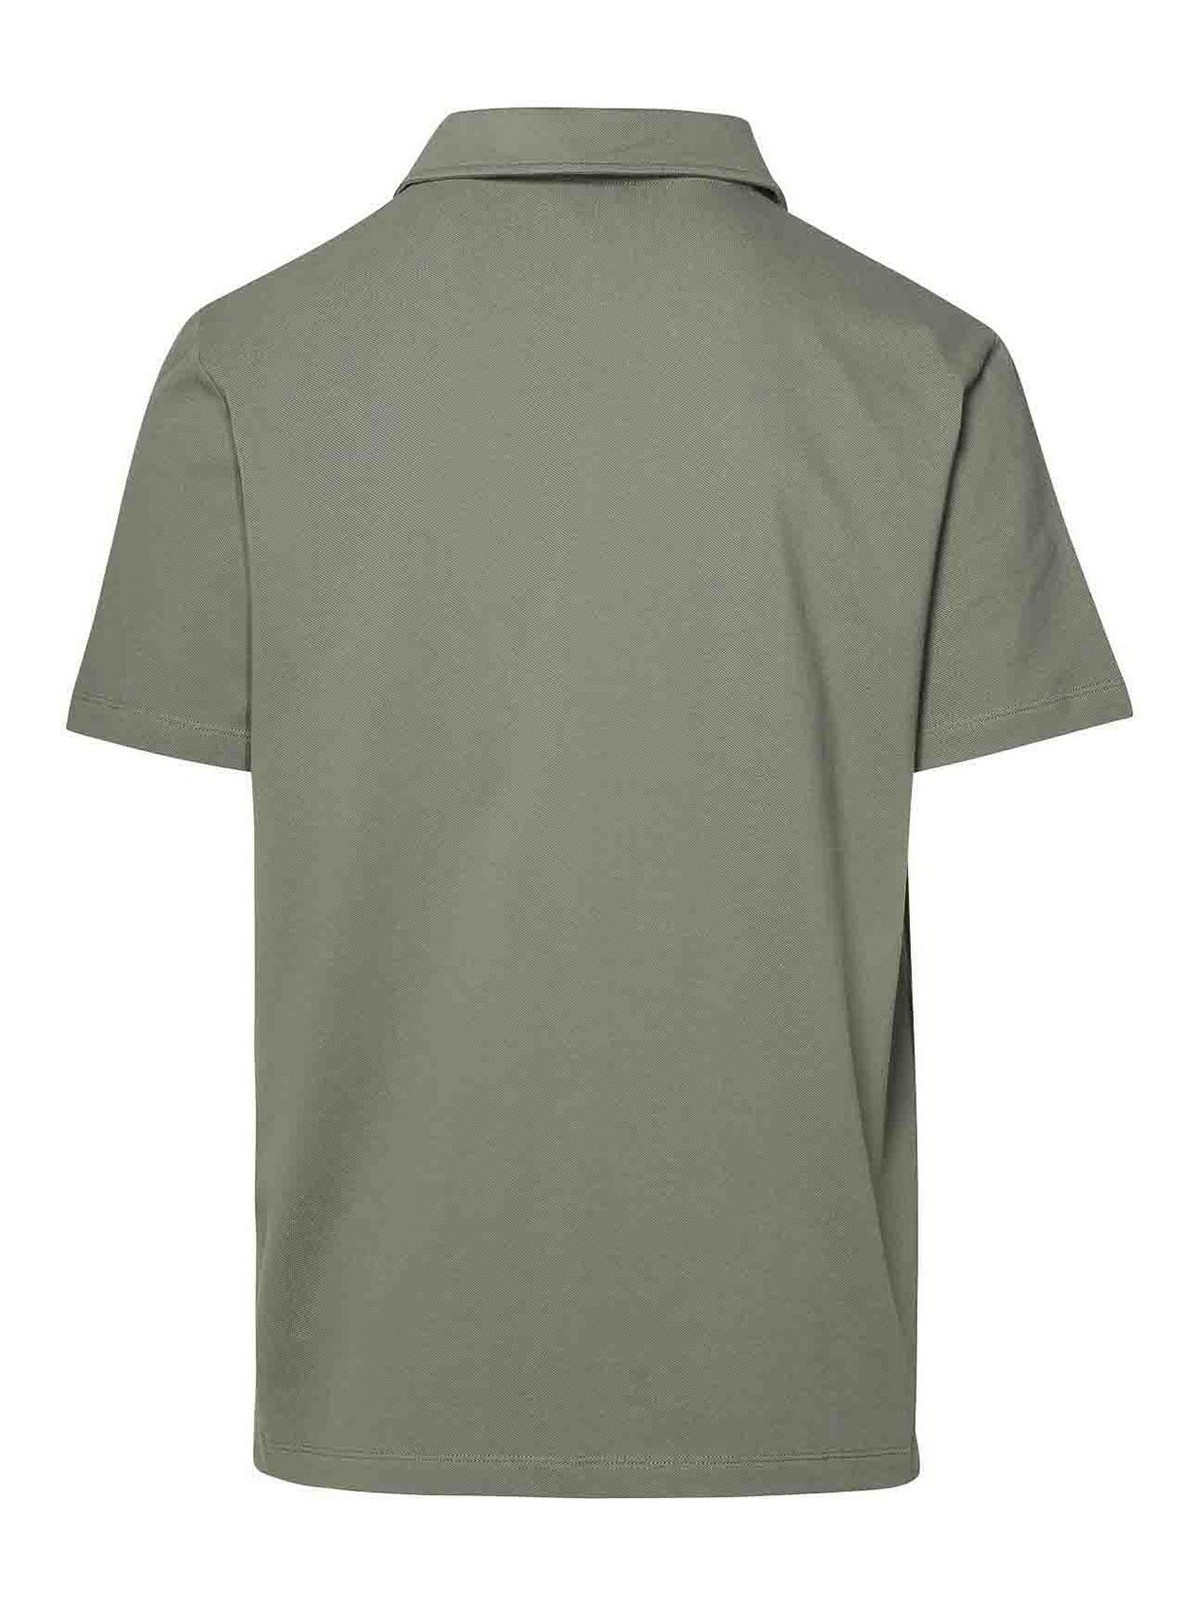 Shop Apc Polo Shirt In Green Cotton